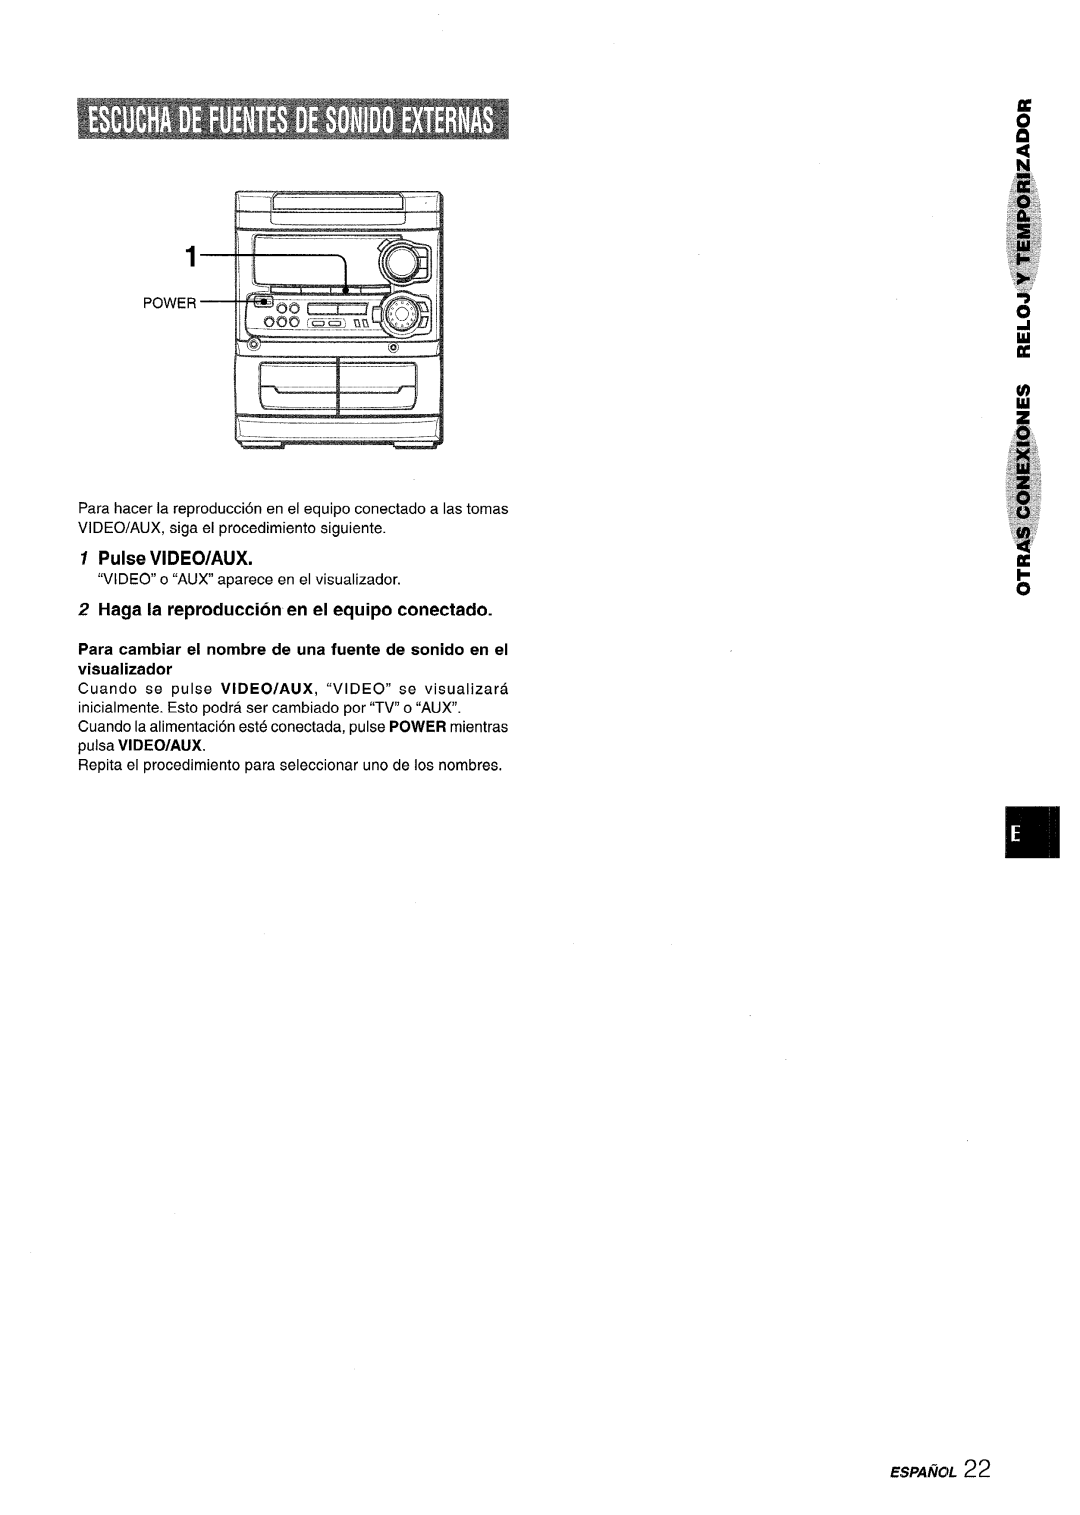 Sony SX-MT321, NSX-MT320 manual Pulse ViDEO/AUX, Haga la reproduction en el equipo conectado 